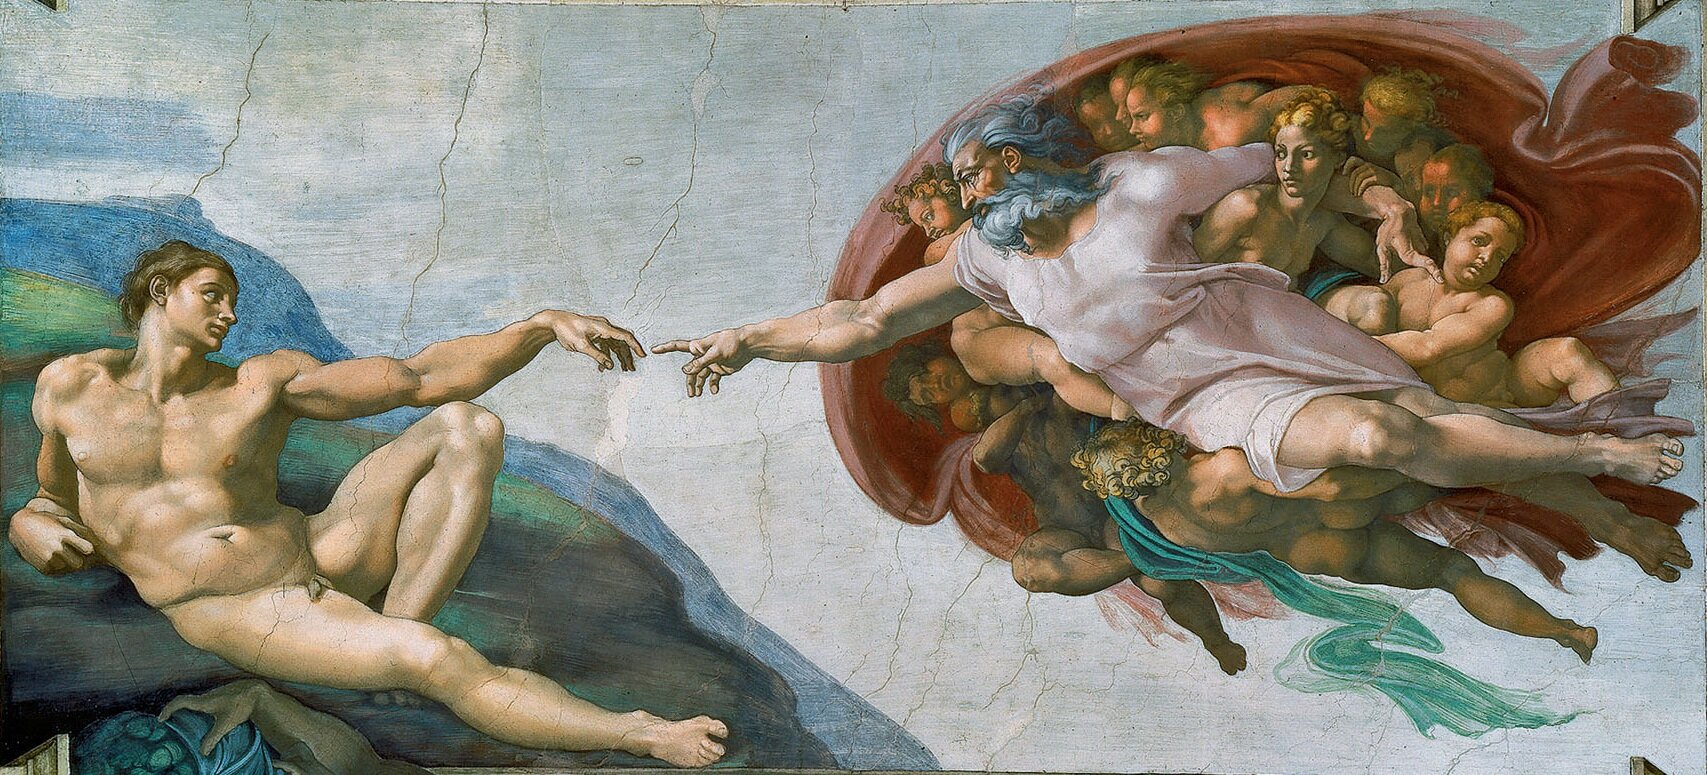 Stworzenie Adama Źródło: Michał Anioł, Stworzenie Adama, 1508–1512, fresk, Kaplica Sykstyńska, Watykan, Rzym, domena publiczna.